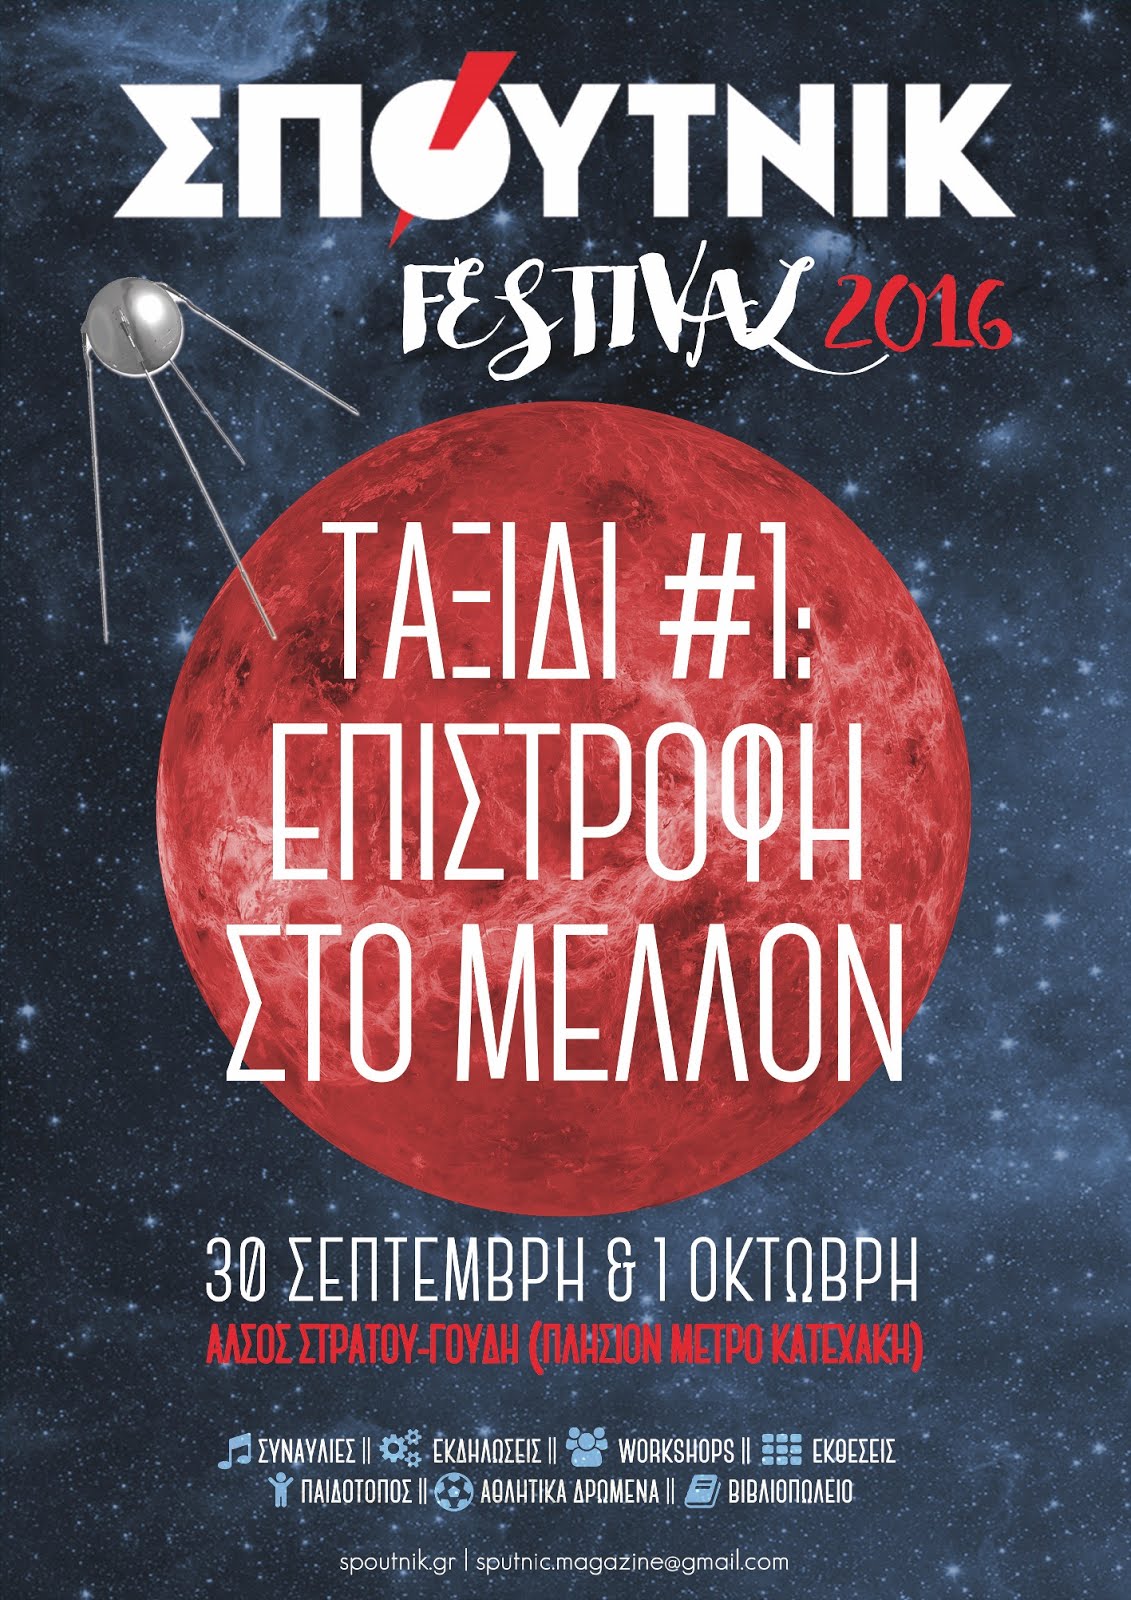 ΣΠΟΥΤΝΙΚ Festival 2016, «Ταξίδι #1: Επιστροφή στο Mέλλον»